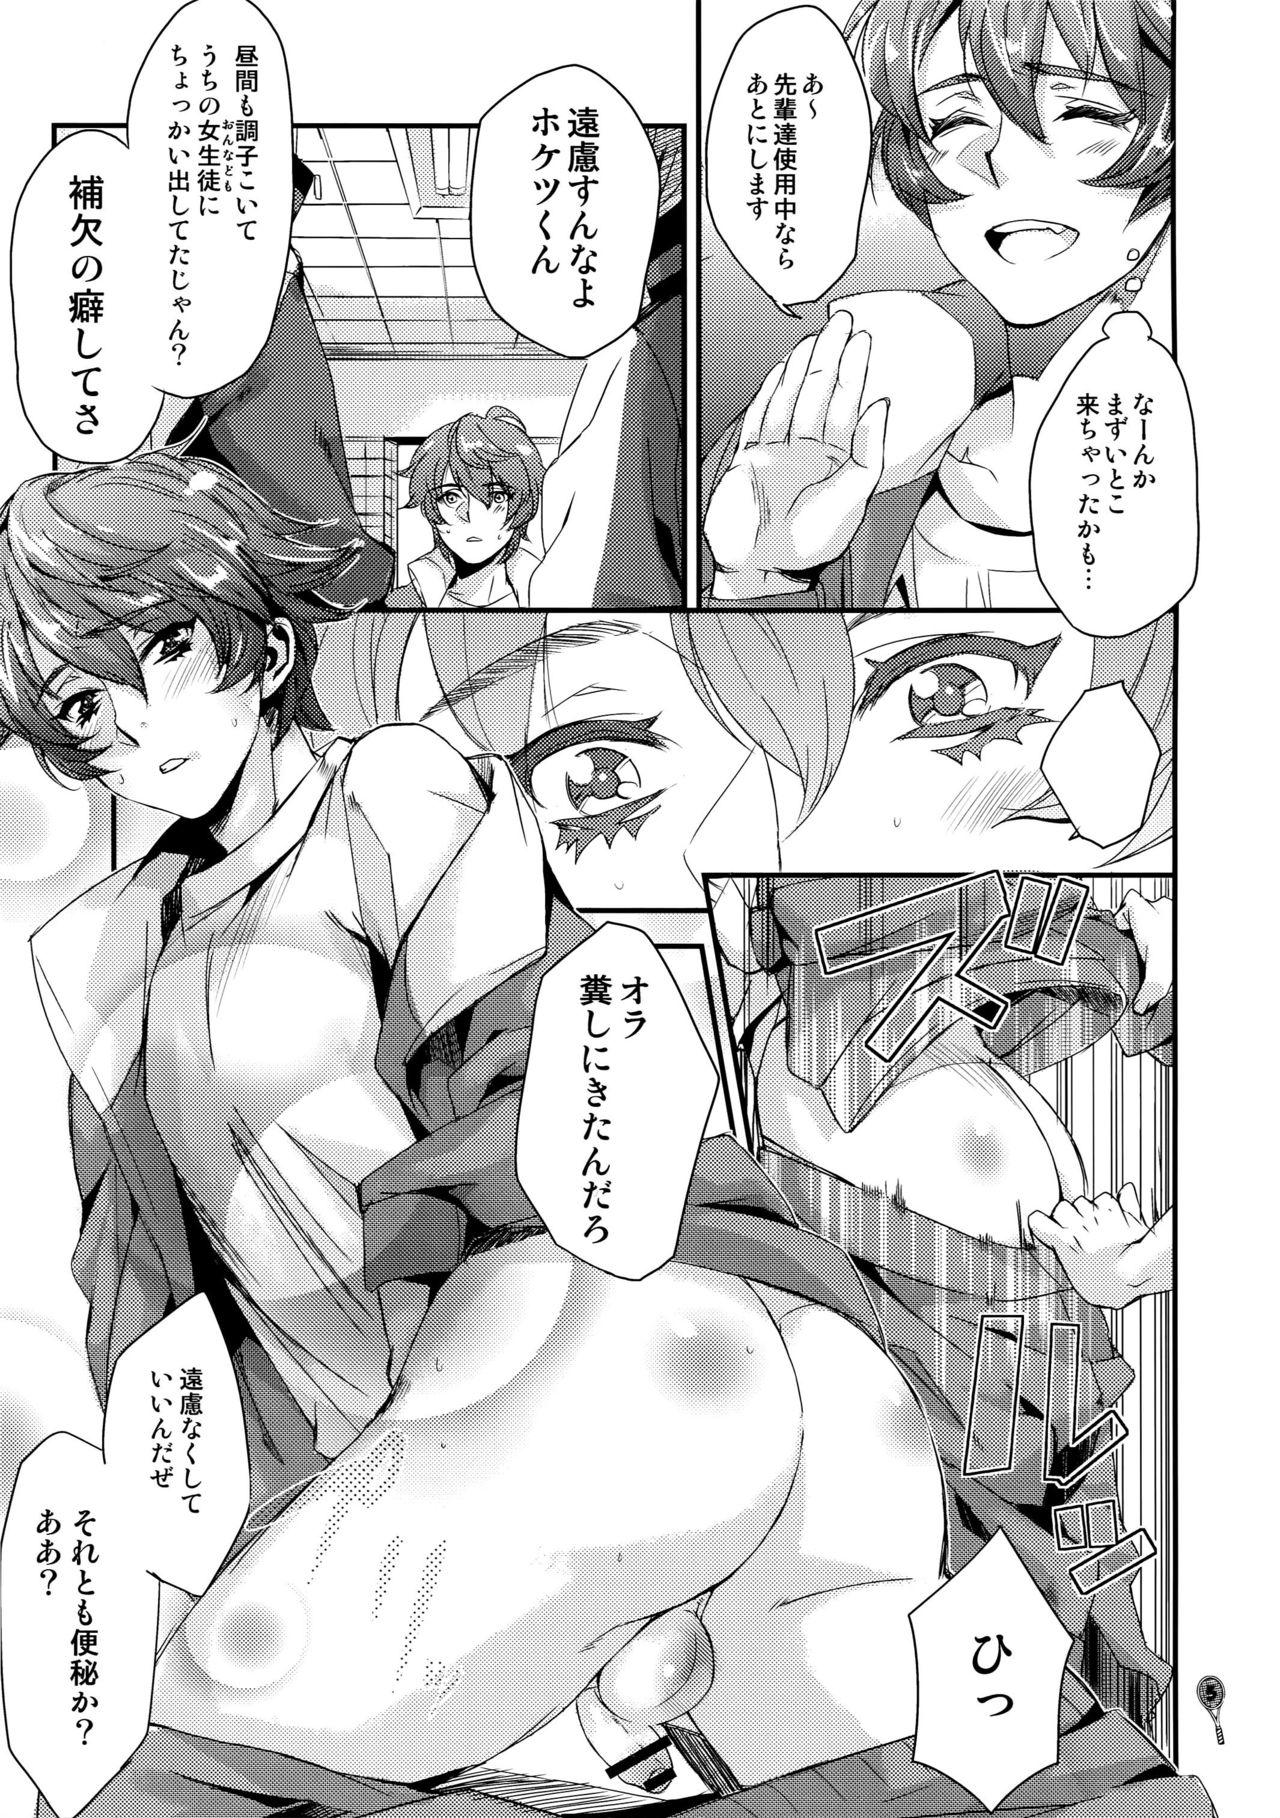 College Hoketsu no Kuse ni Namaiki da - Prince of tennis Public Sex - Page 4